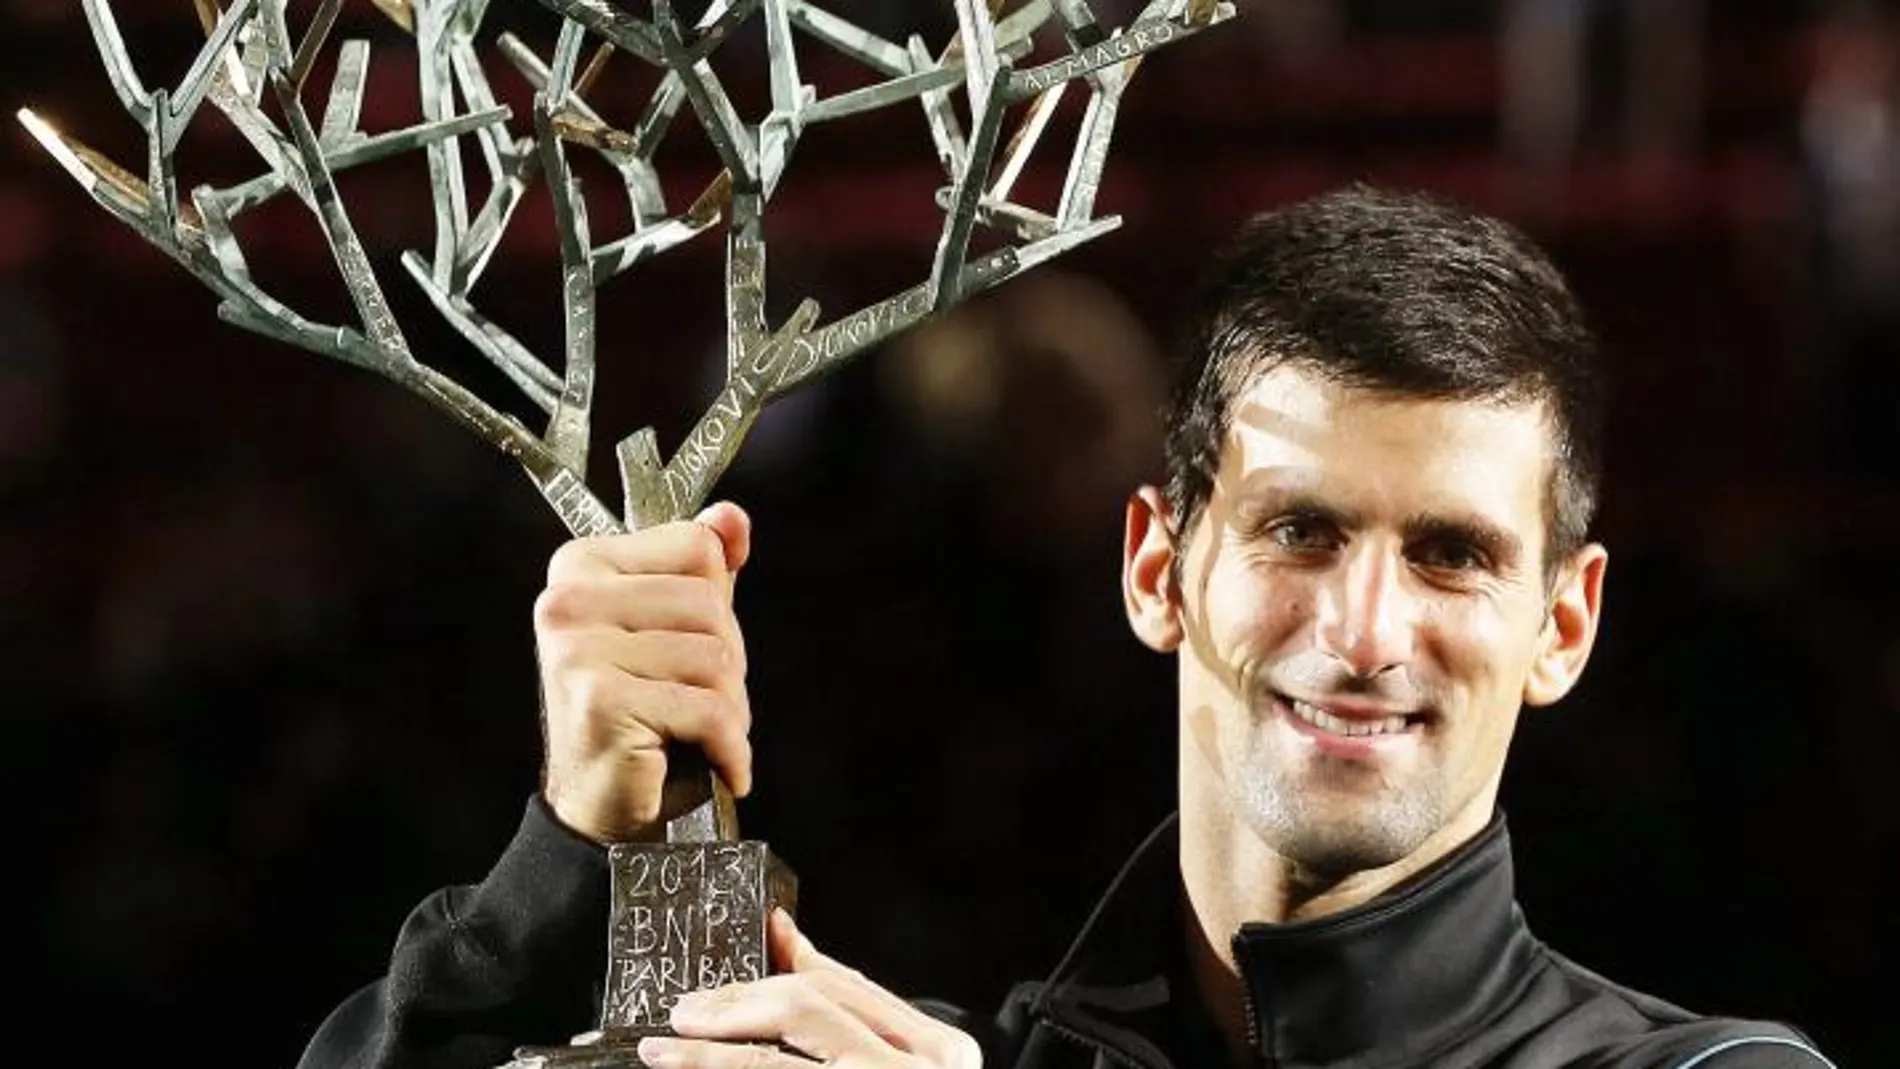 El serbio Novak Djokovic, número dos del mundo, levanta el trofeo del torneo de Paris Bercy, tras derrotar en la final al español David Ferrer